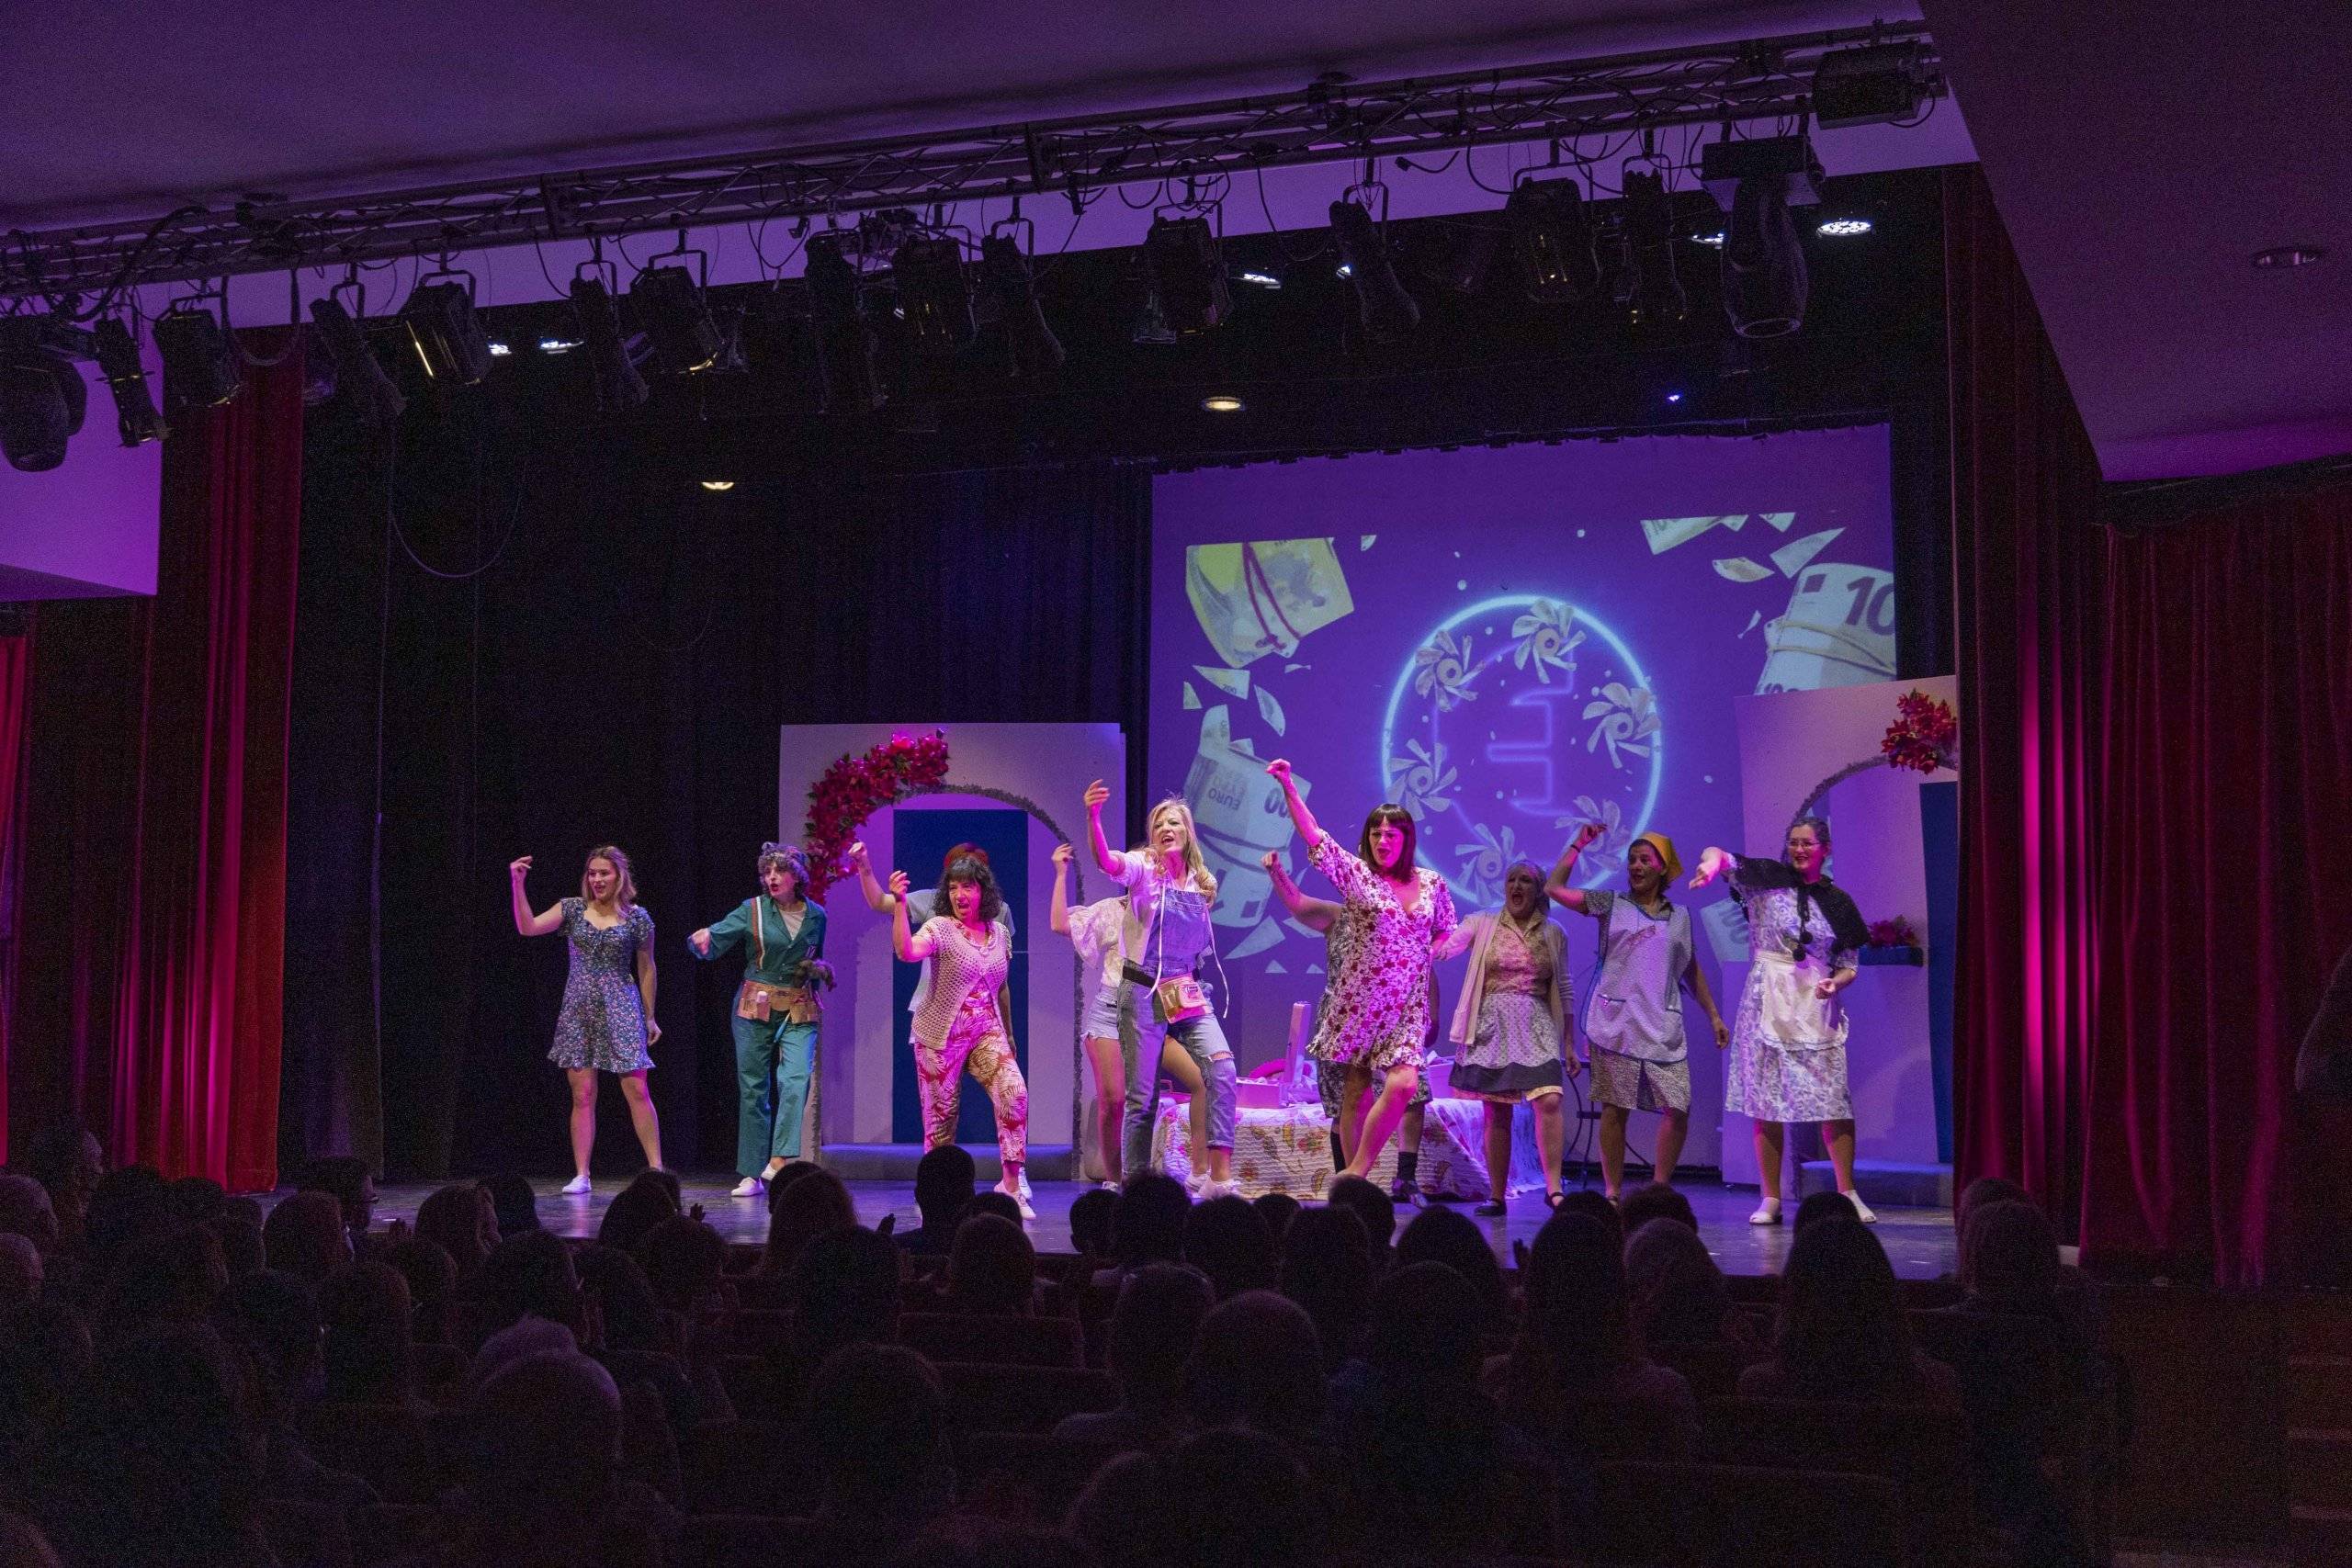 Momento del espectáculo "Mamma Mia! El musical", a cargo de la compañía Up's Teatro Musical.